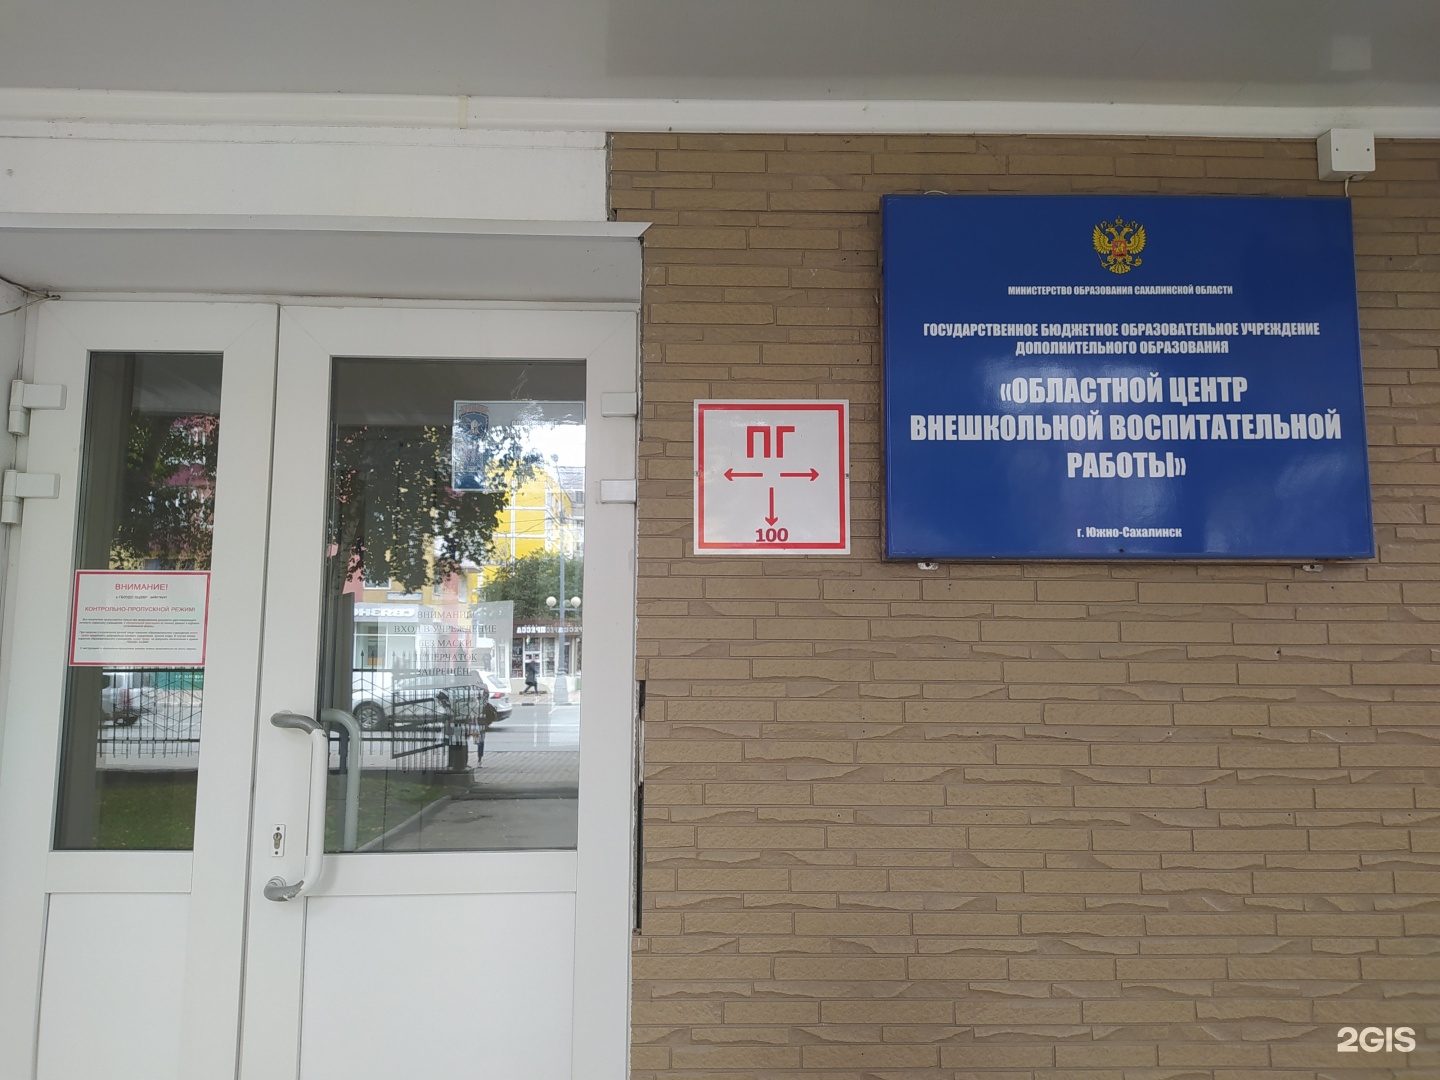 Областной центр внешкольной воспитательной работы Южно-Сахалинск